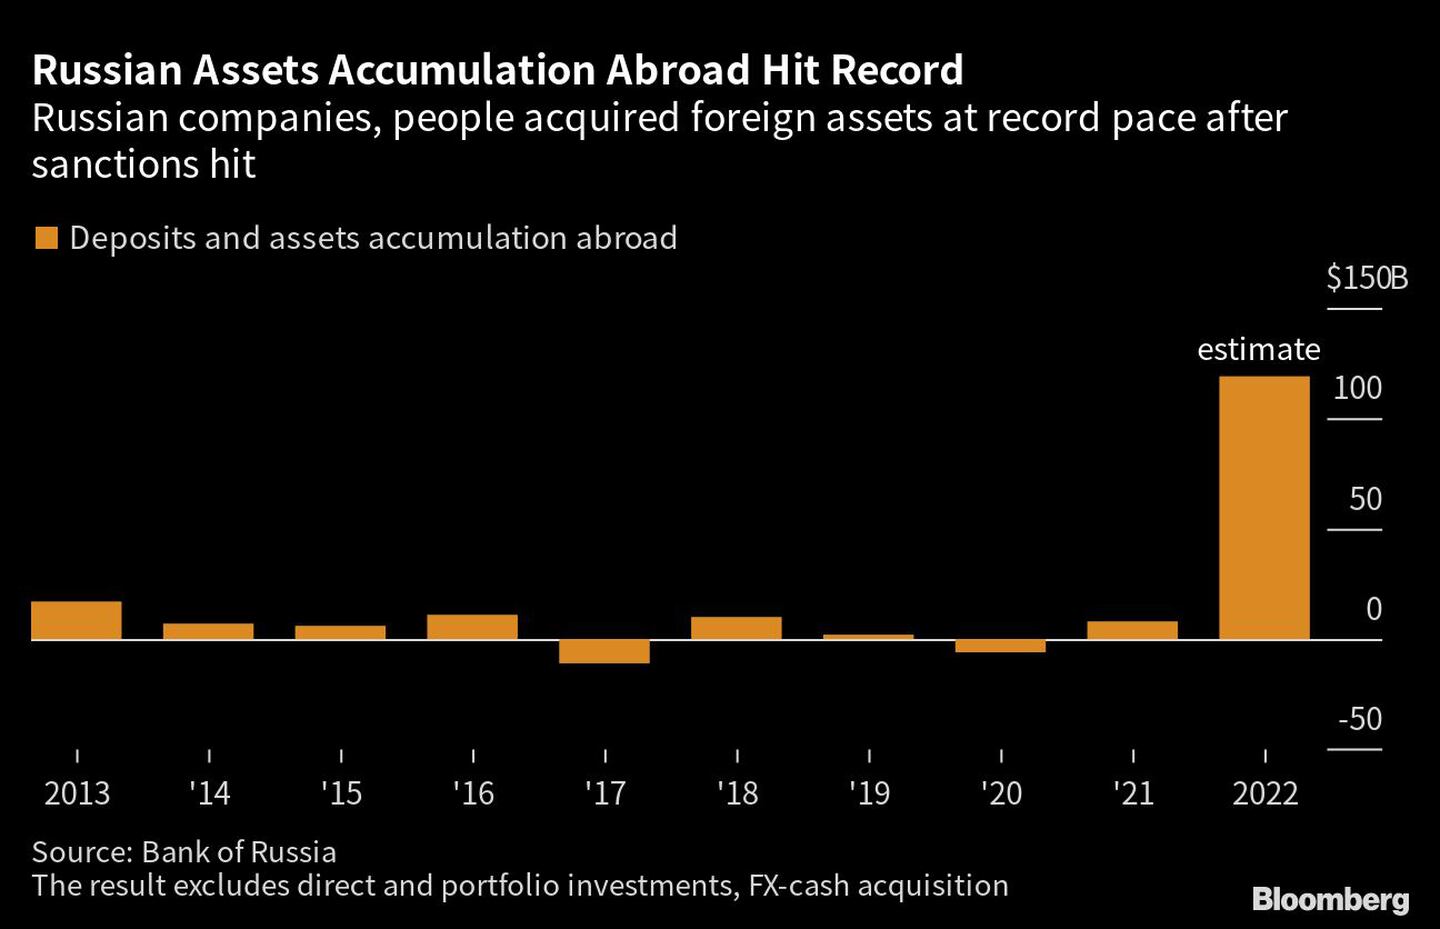 Empresas y ciudadanos rusos adquieren activos en el extranjero a un ritmo récord tras el impacto de las sancionesdfd